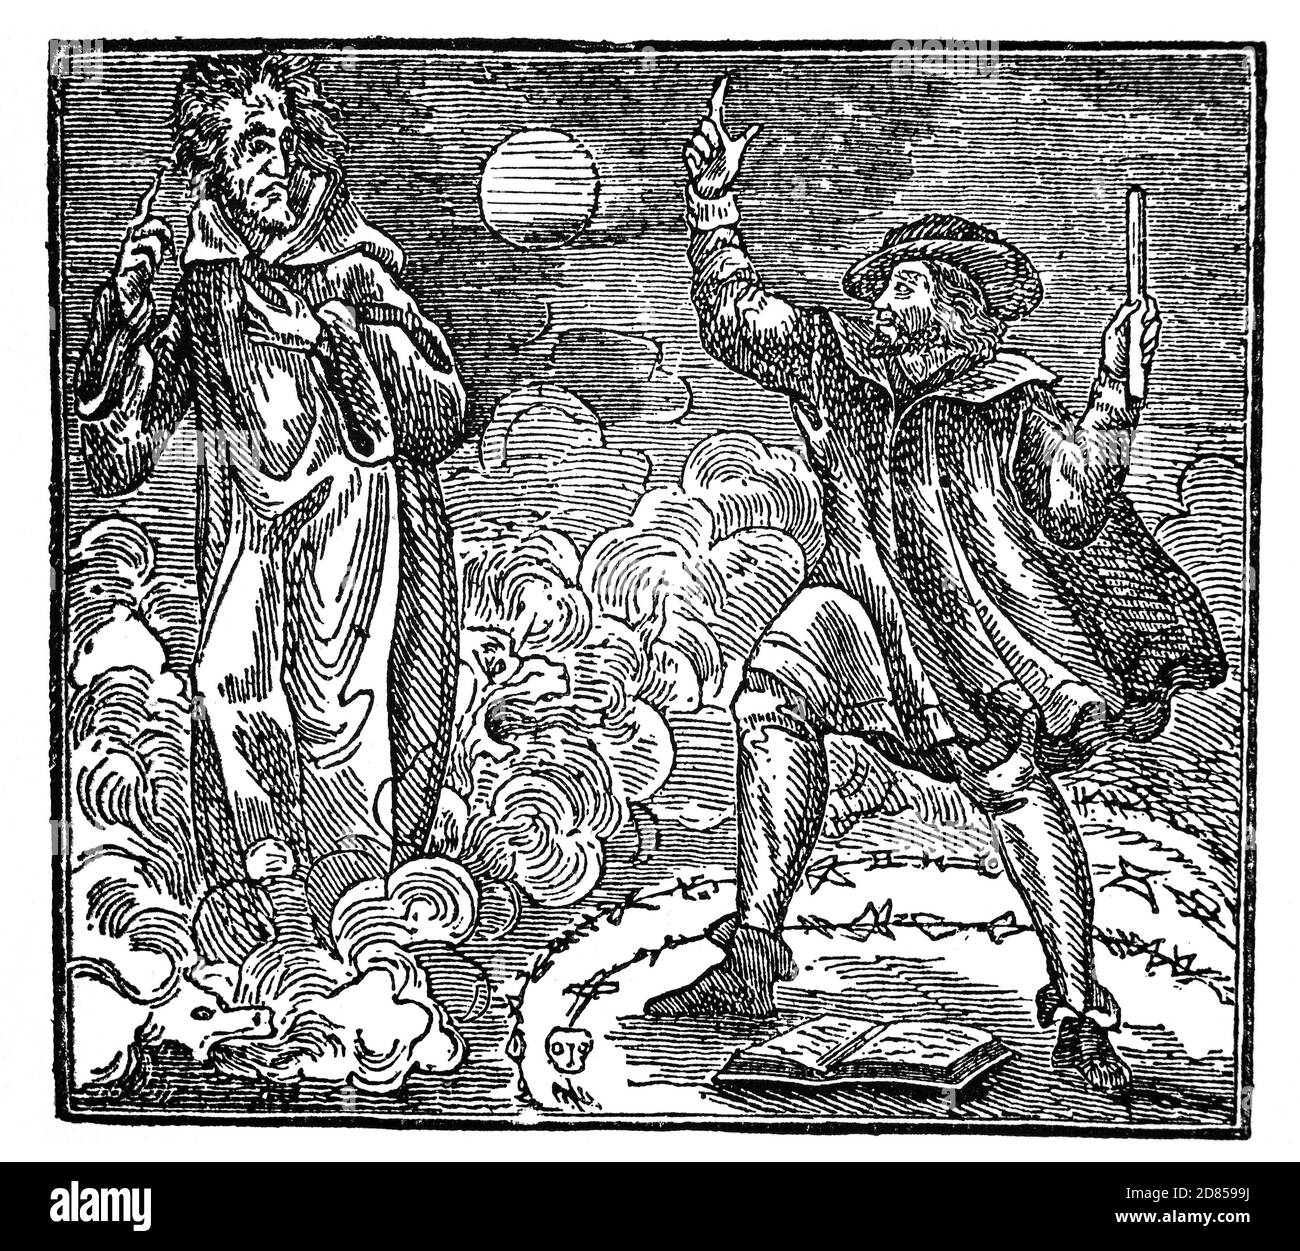 Eine Illustration aus dem 19. Jahrhundert von Faust, alias Doktor Faustus, einem deutschen Totenbeschwörer oder Astrologen und Helden einer der dauerhaftesten Legenden der westlichen Folklore und Literatur, der den Teufel aufwirft, bevor er seine Seele im Austausch für Wissen und Macht verkauft. Stockfoto